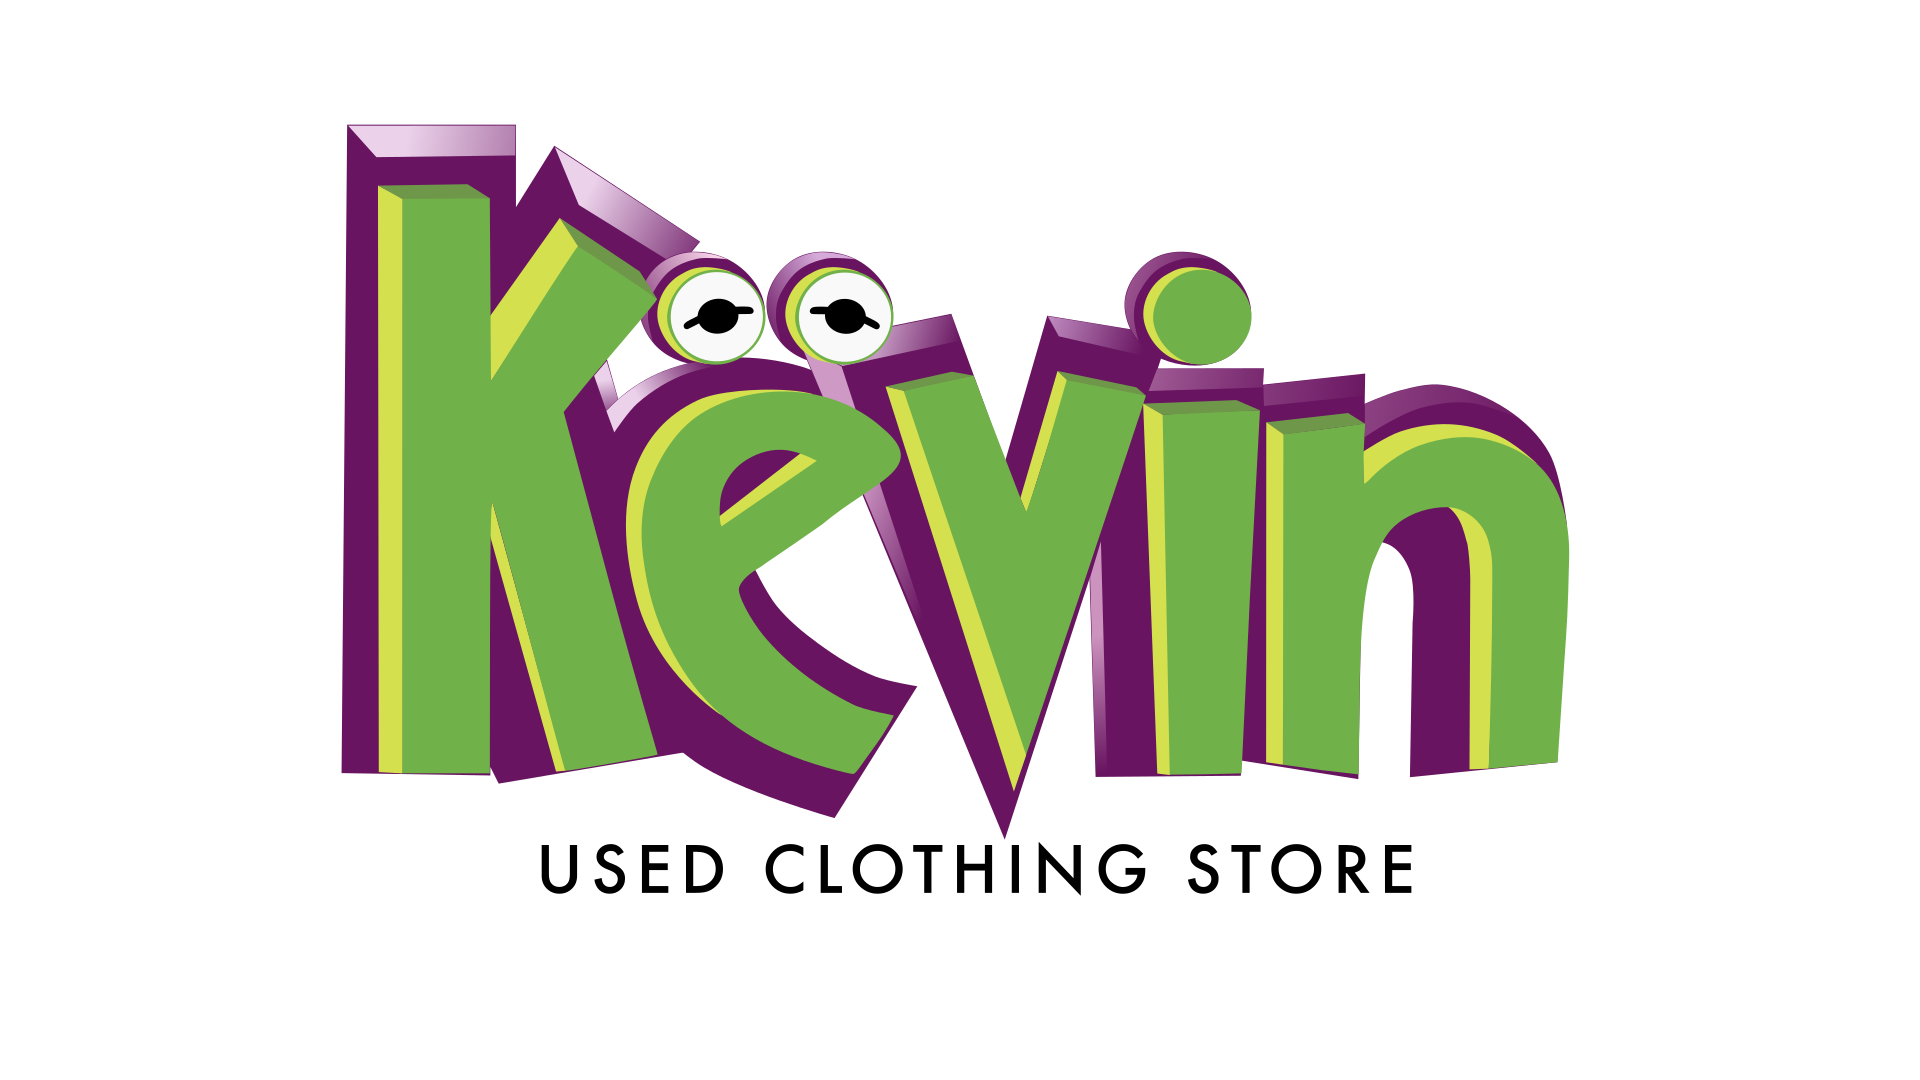 Këvin Used Clothing Store